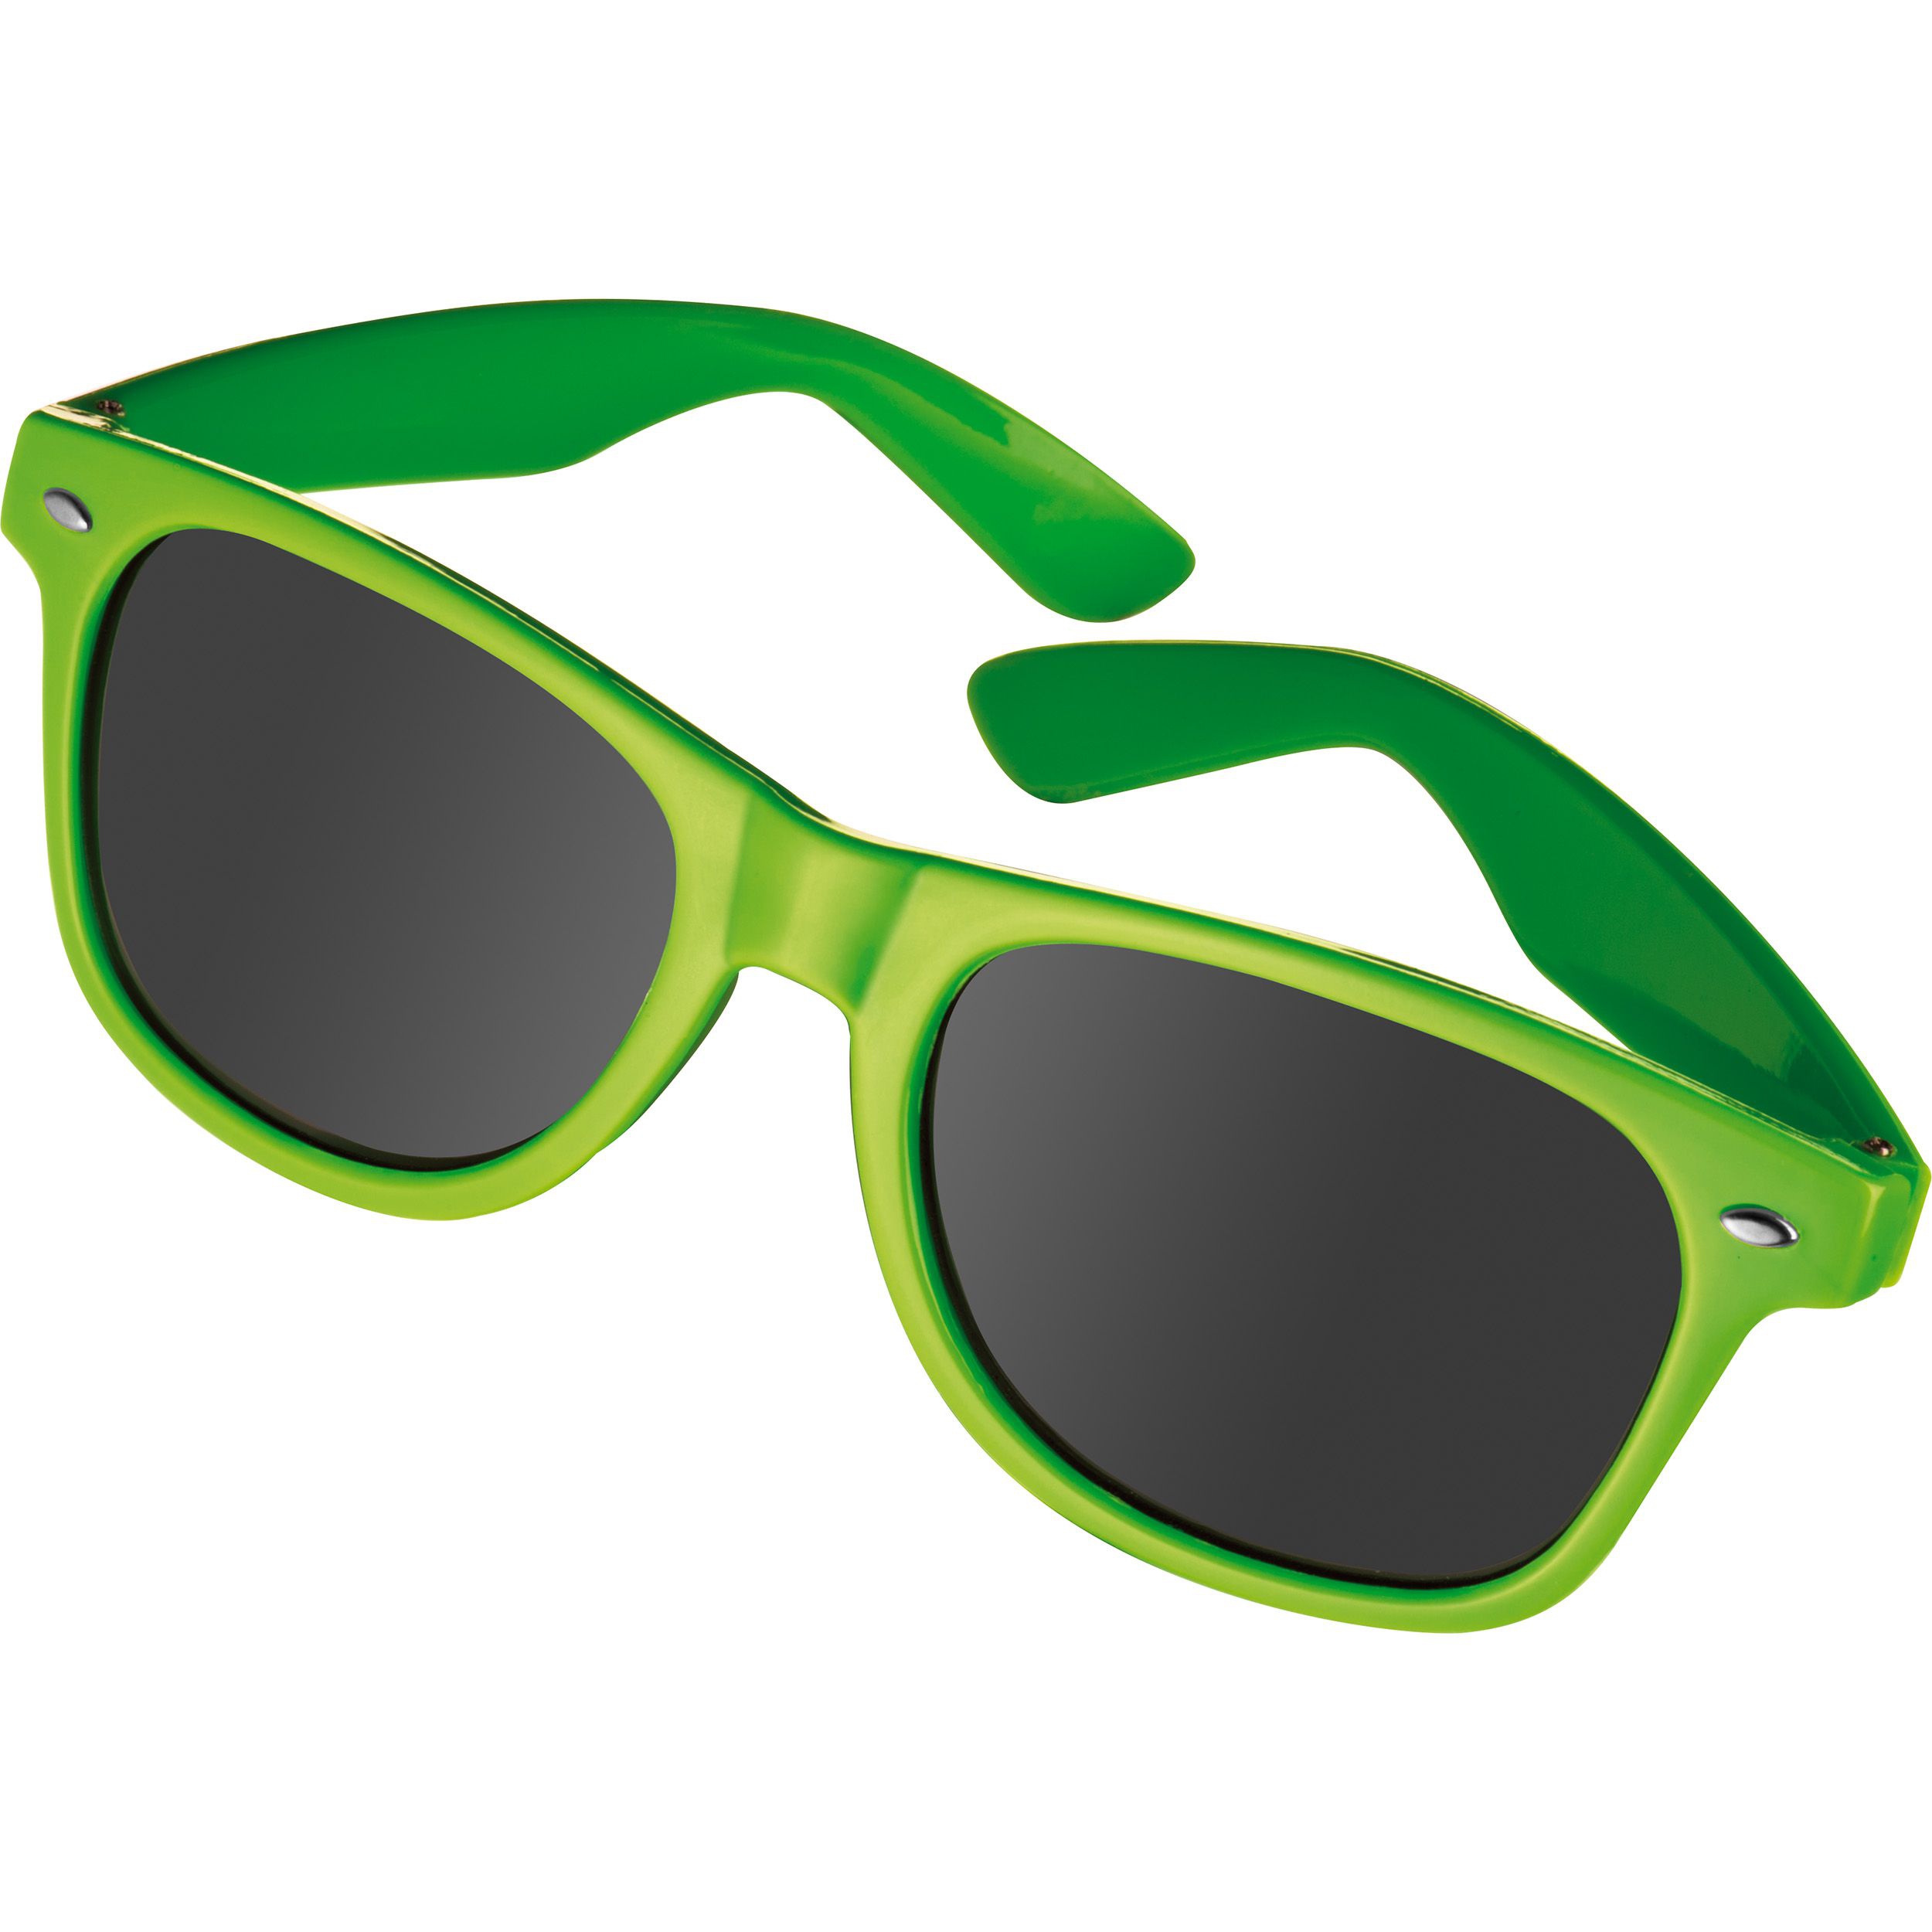 Sonnenbrille aus Kunststoff im "Nerdlook", UV 400 Schutz, apfelgrün